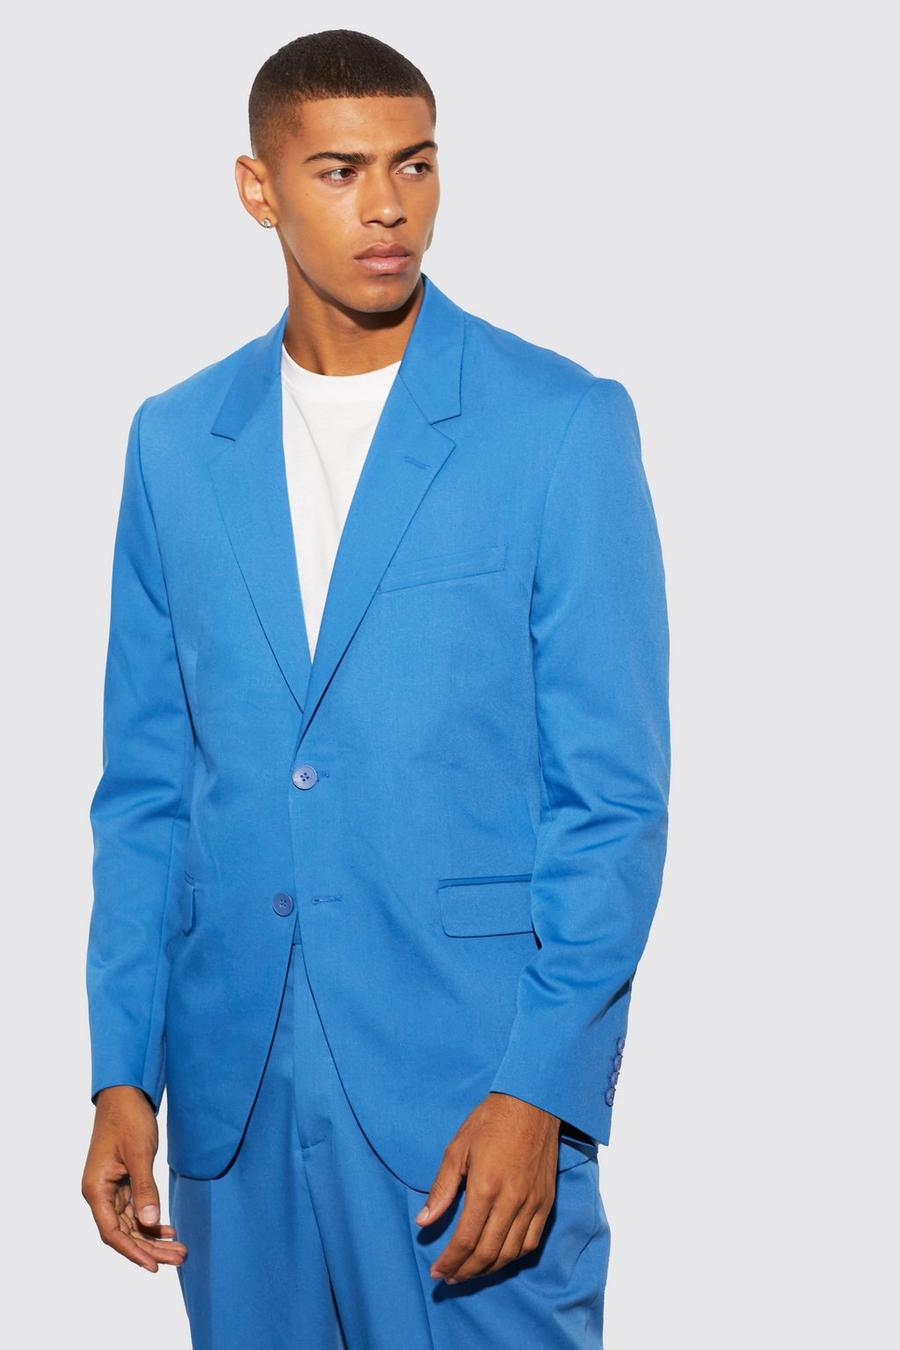 כחול ים ז'קט חליפה בגזרה משוחררת עם רכיסה אחת image number 1